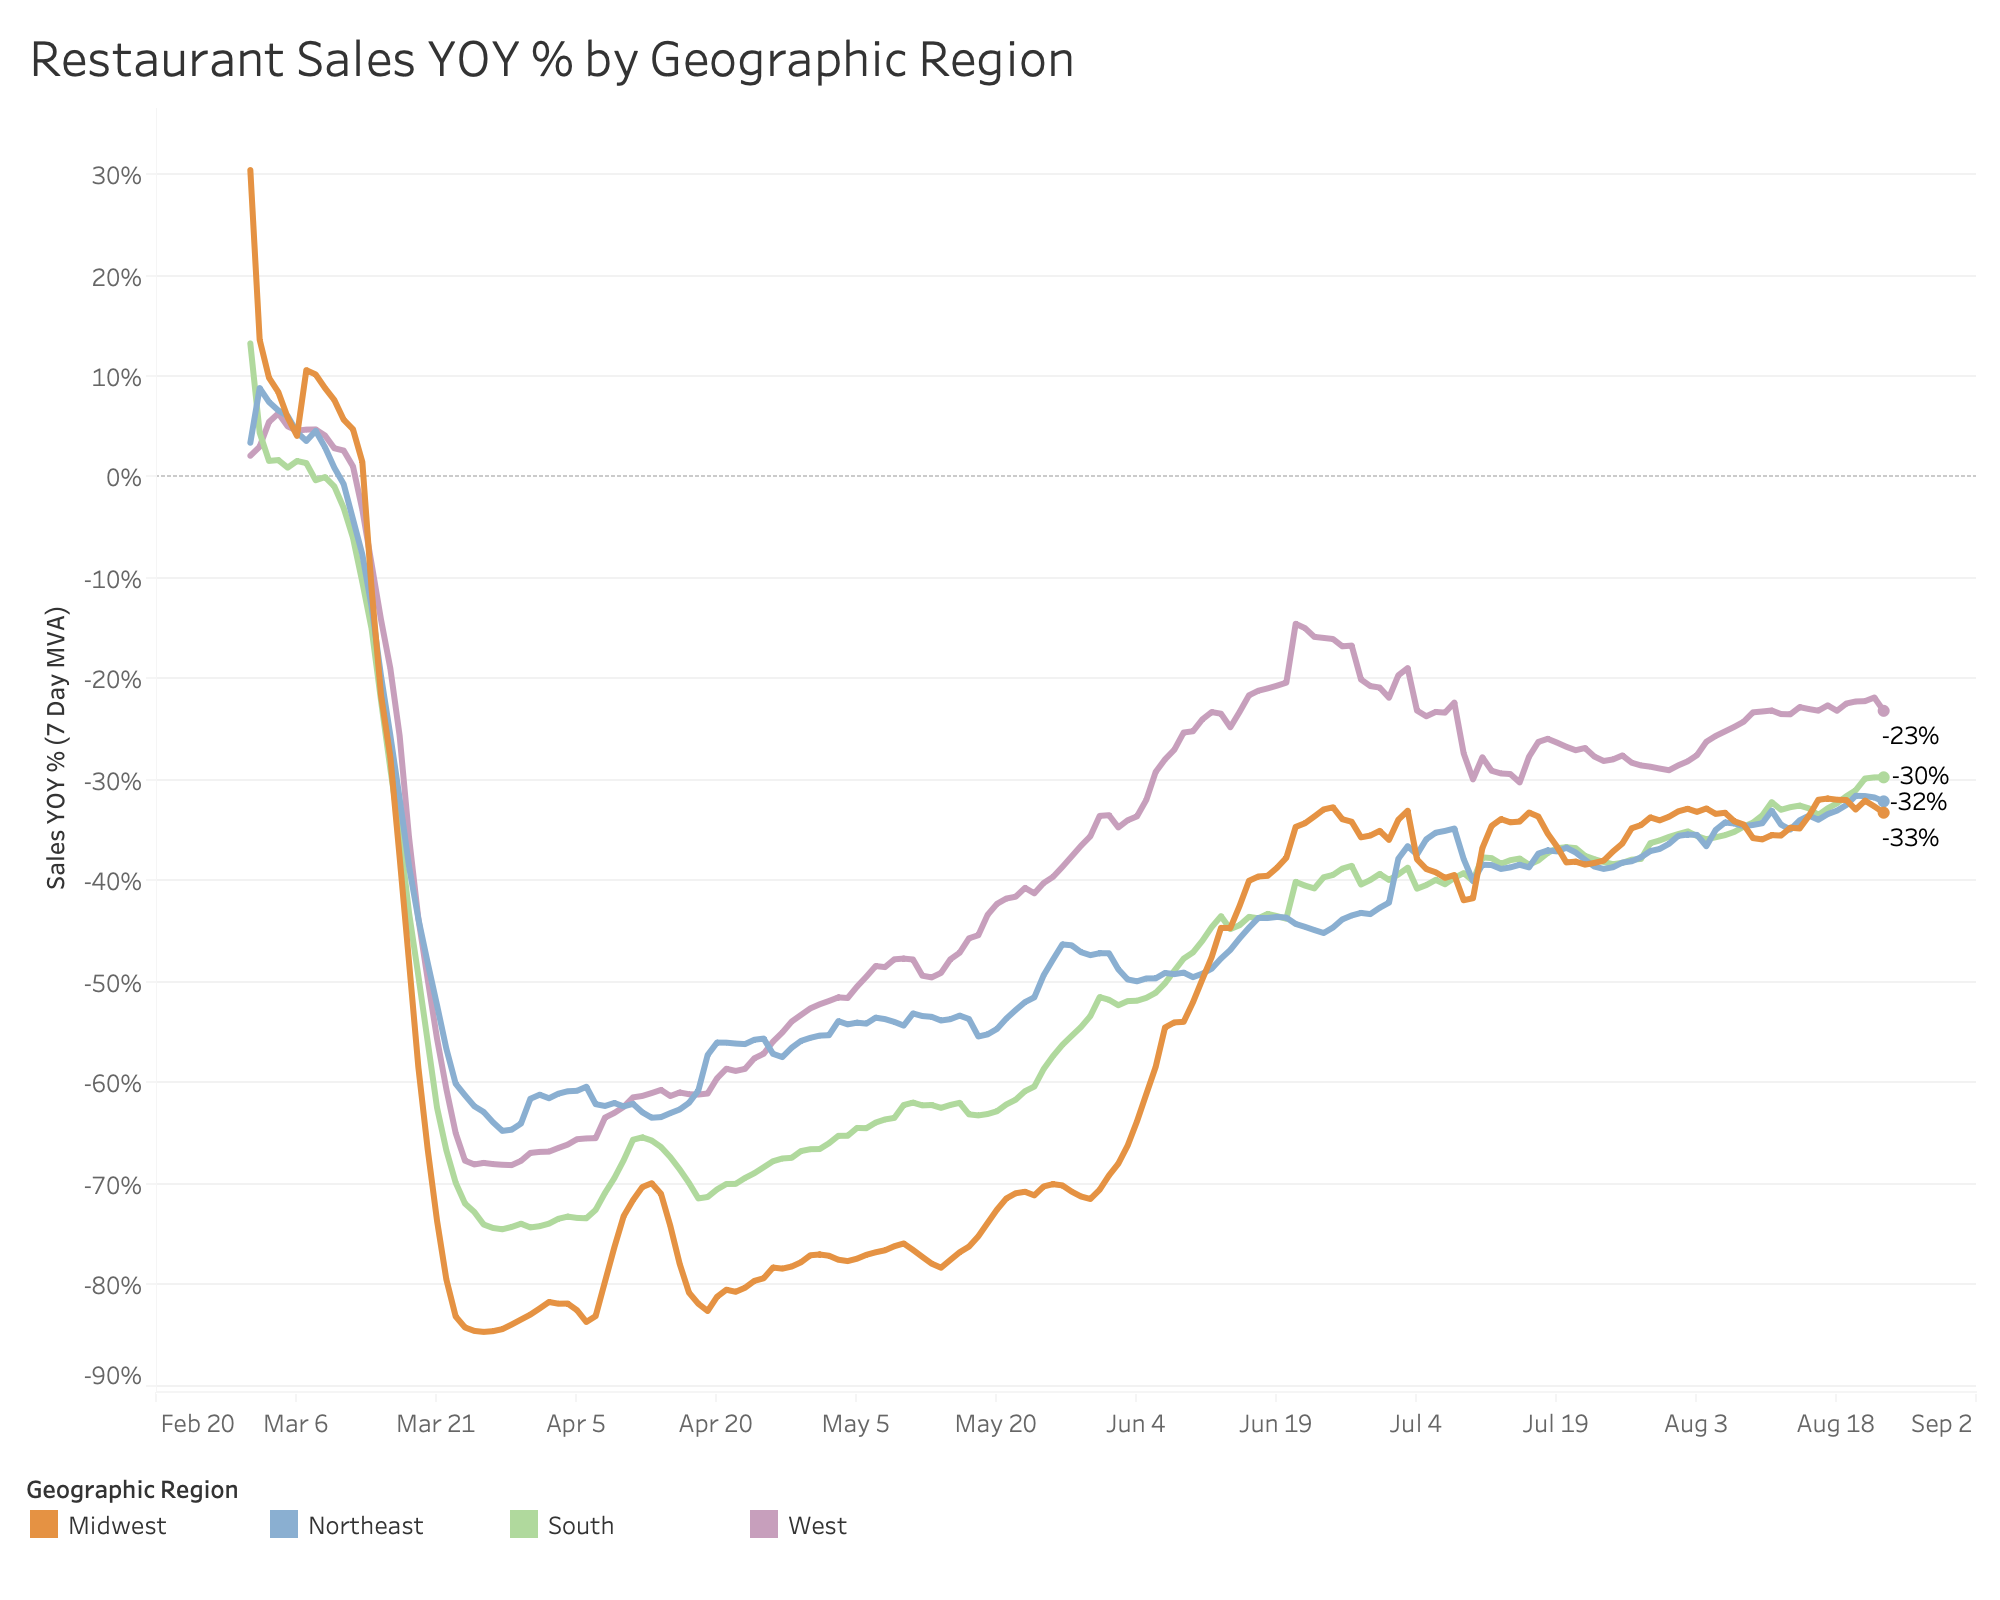 YOY sales by geographic region